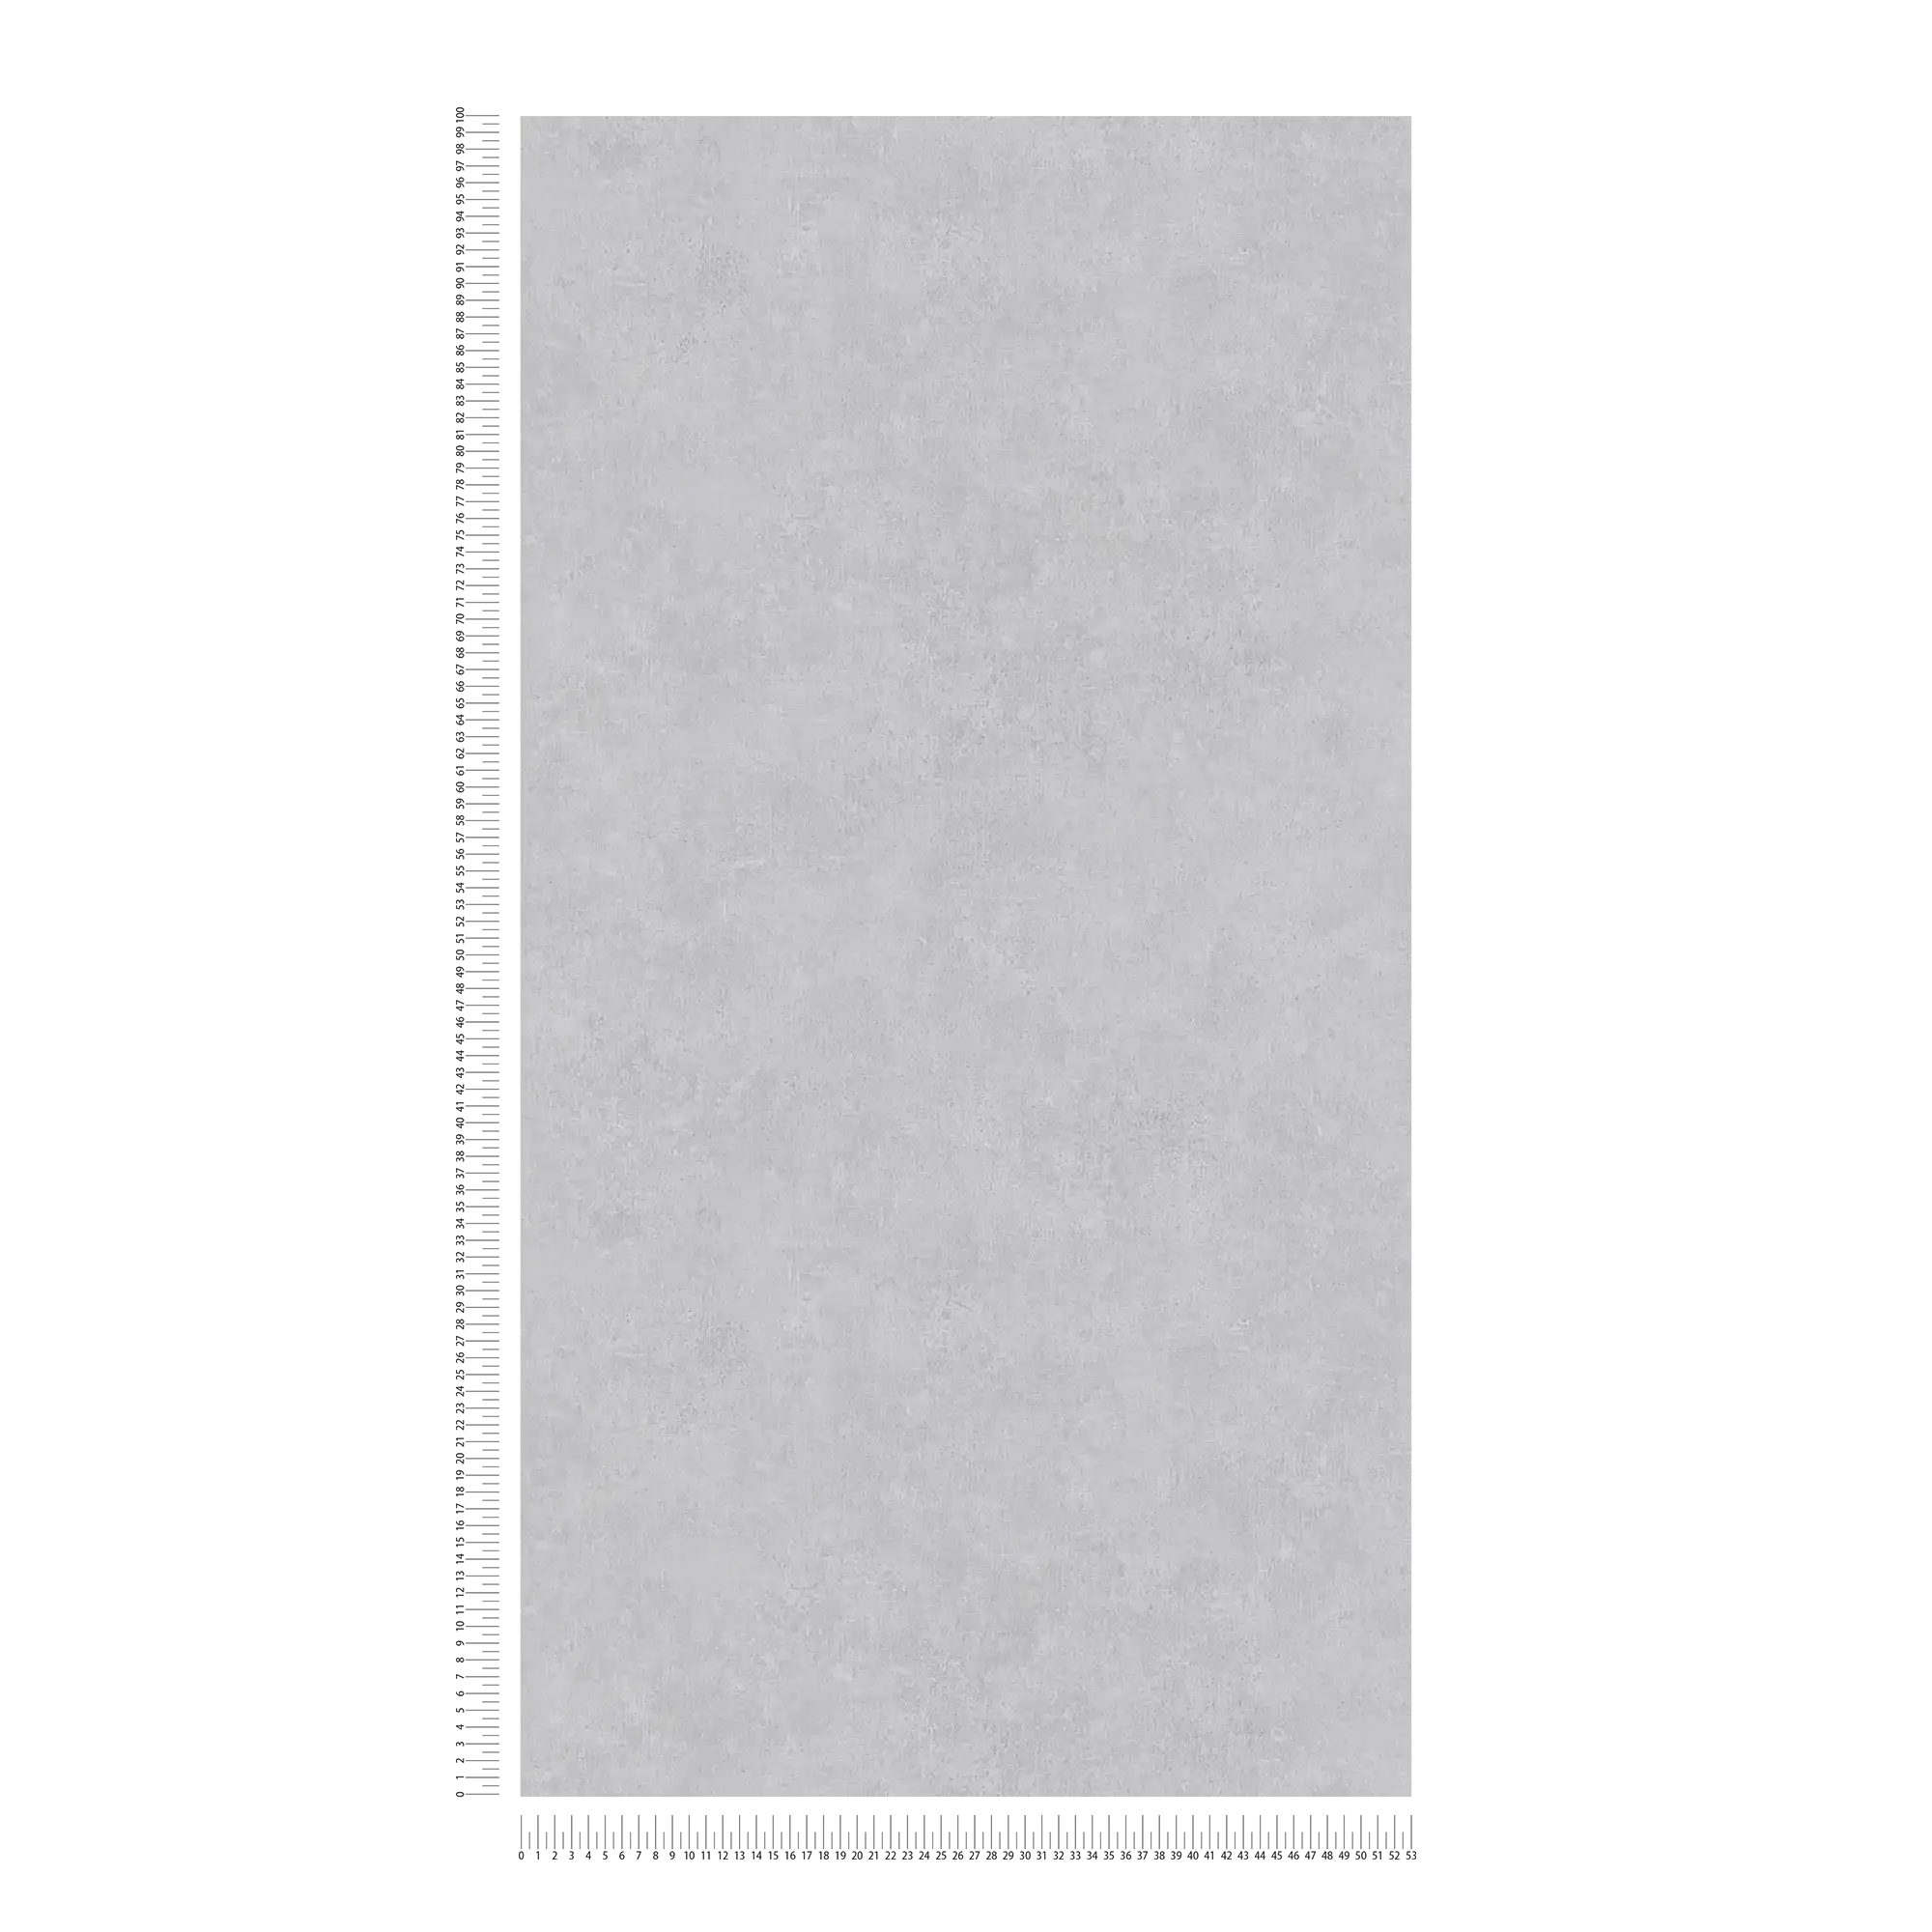             Papel pintado unitario con diseño tono sobre tono en aspecto usado - gris
        